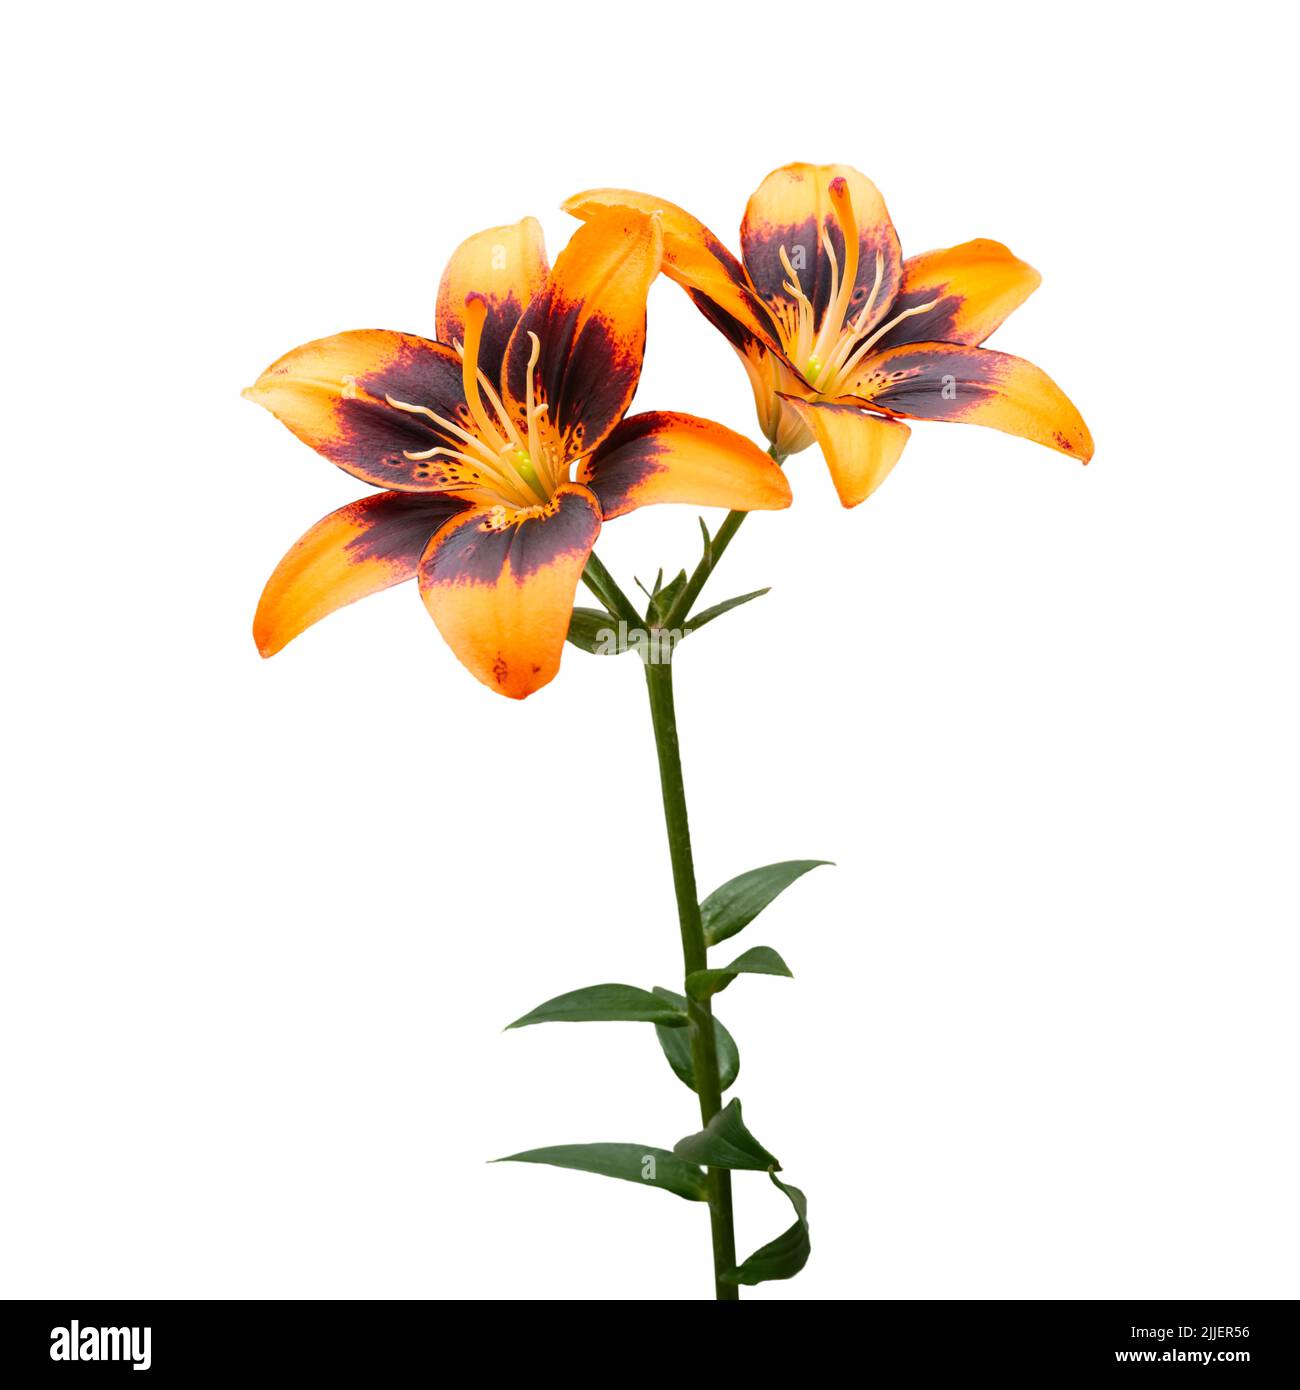 Flores de lirio anaranjado aisladas sobre fondo blanco Foto de stock